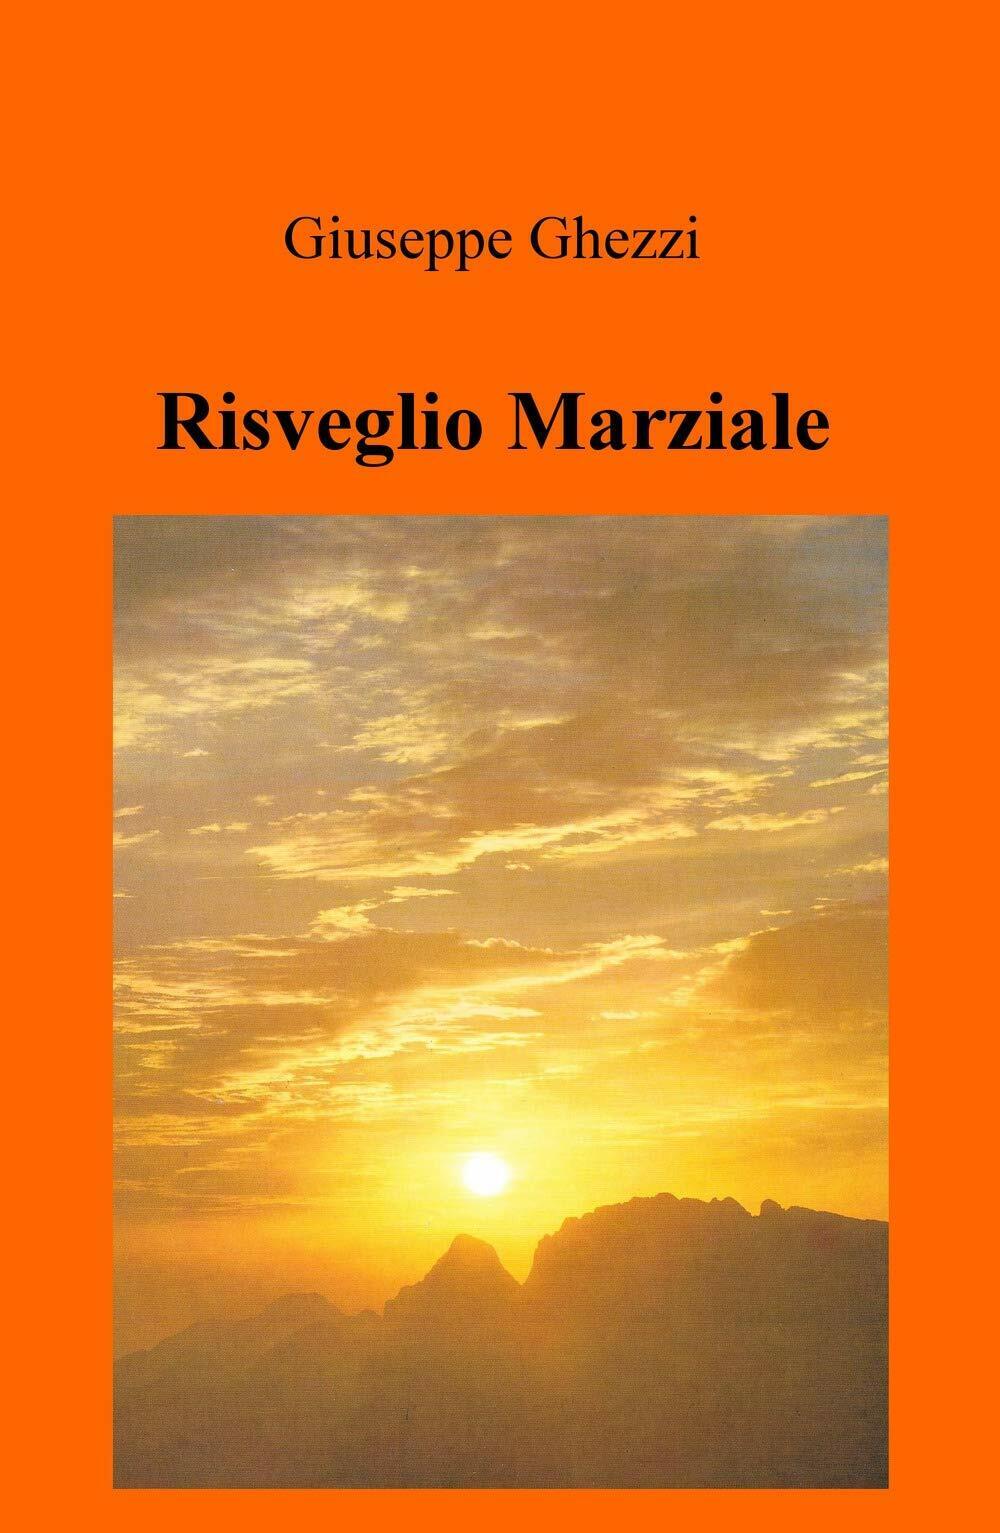 Risveglio Marziale - Giuseppe Ghezzi - ilmiolibro, 2019 libro usato